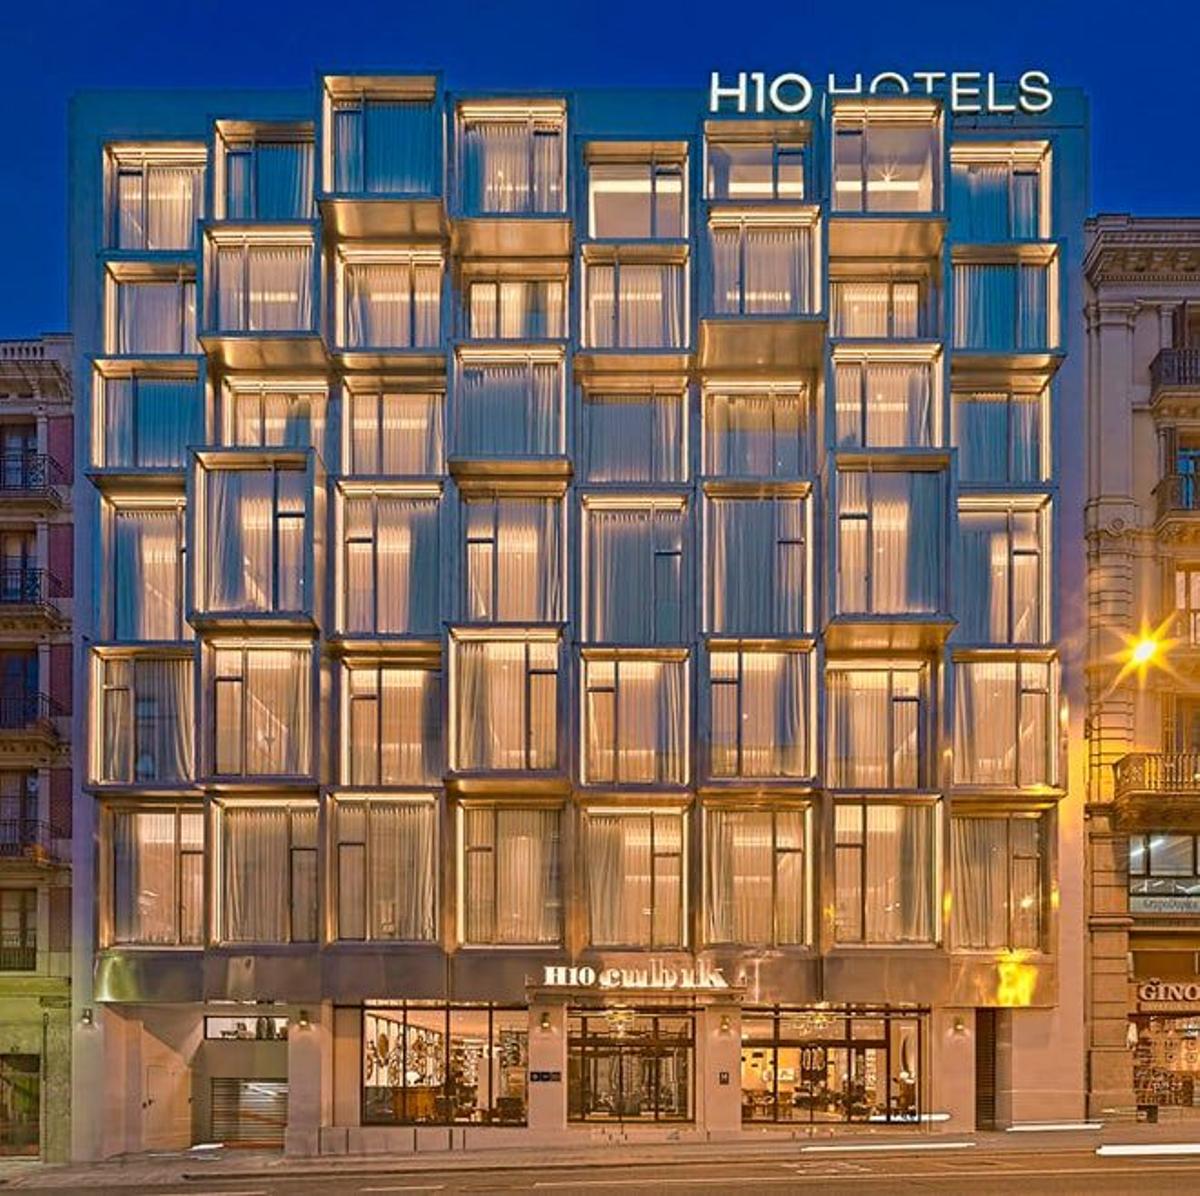 H10 sorprende con un hotel futurista en Barcelona